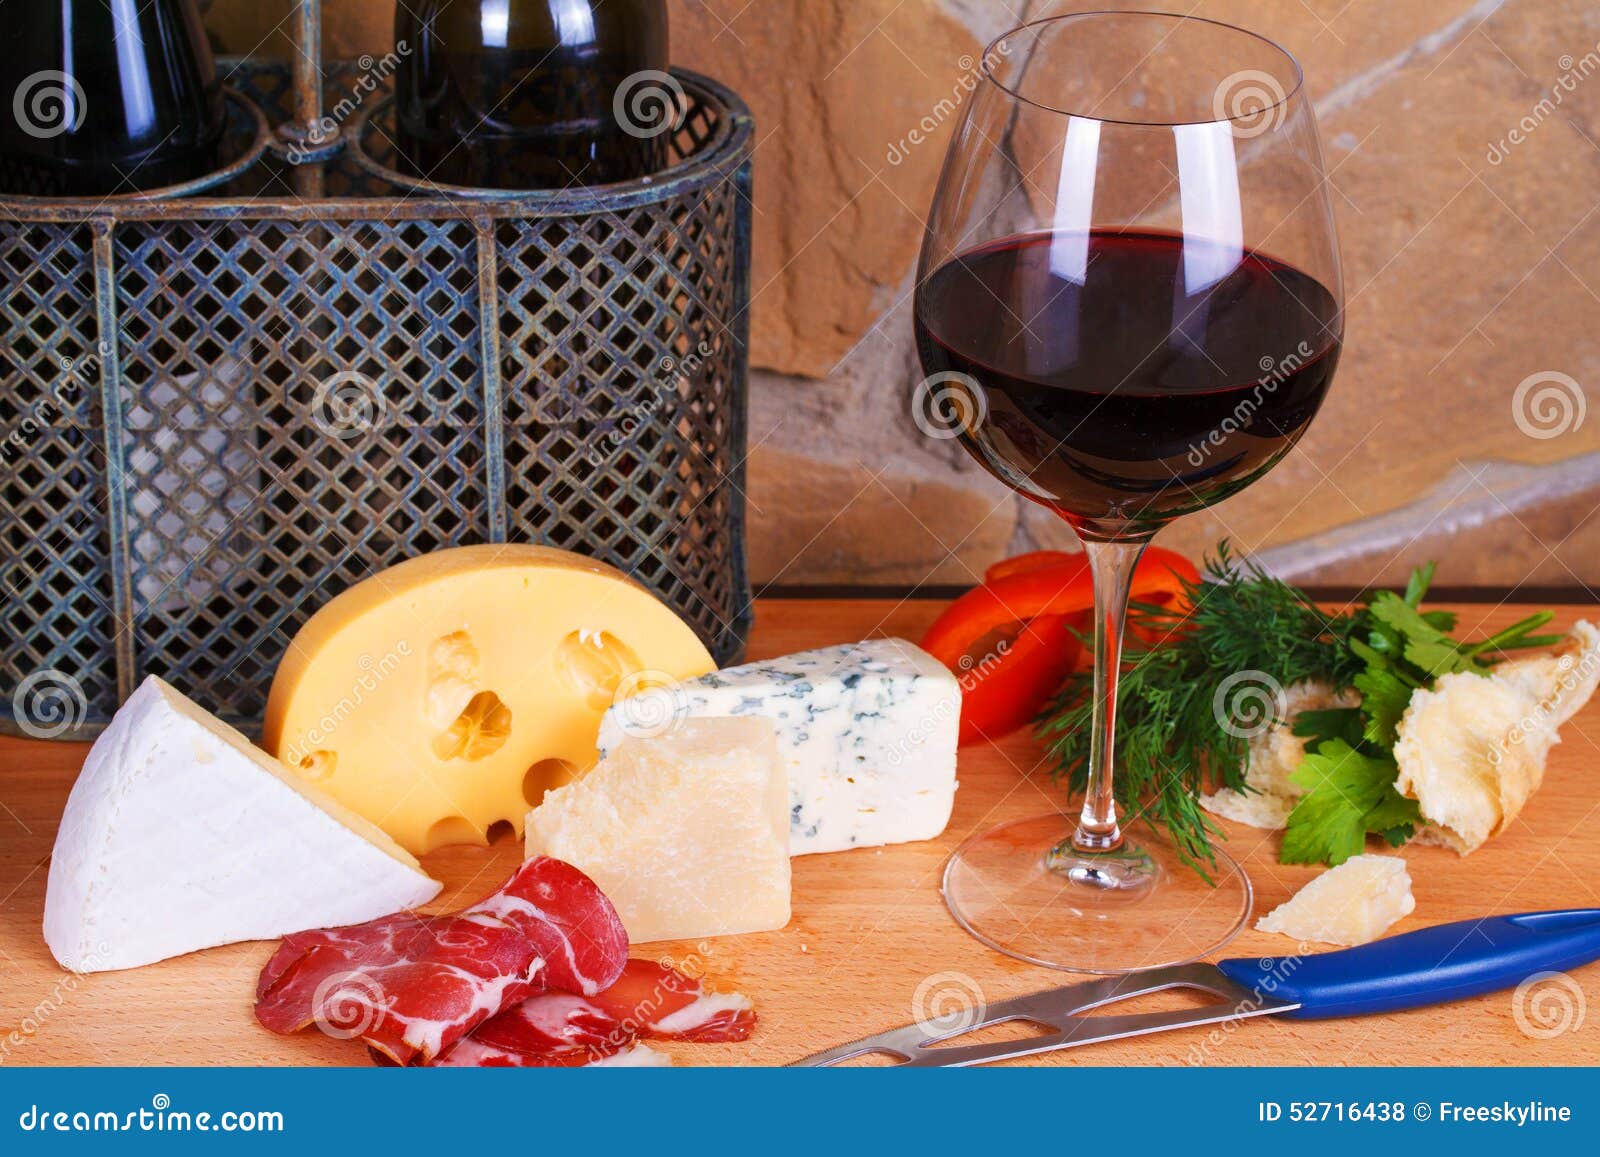 Сыр вино санкт петербург. Хамон сыр вино. Вино и сыр. Вино с сыром. Красное вино и сыр.